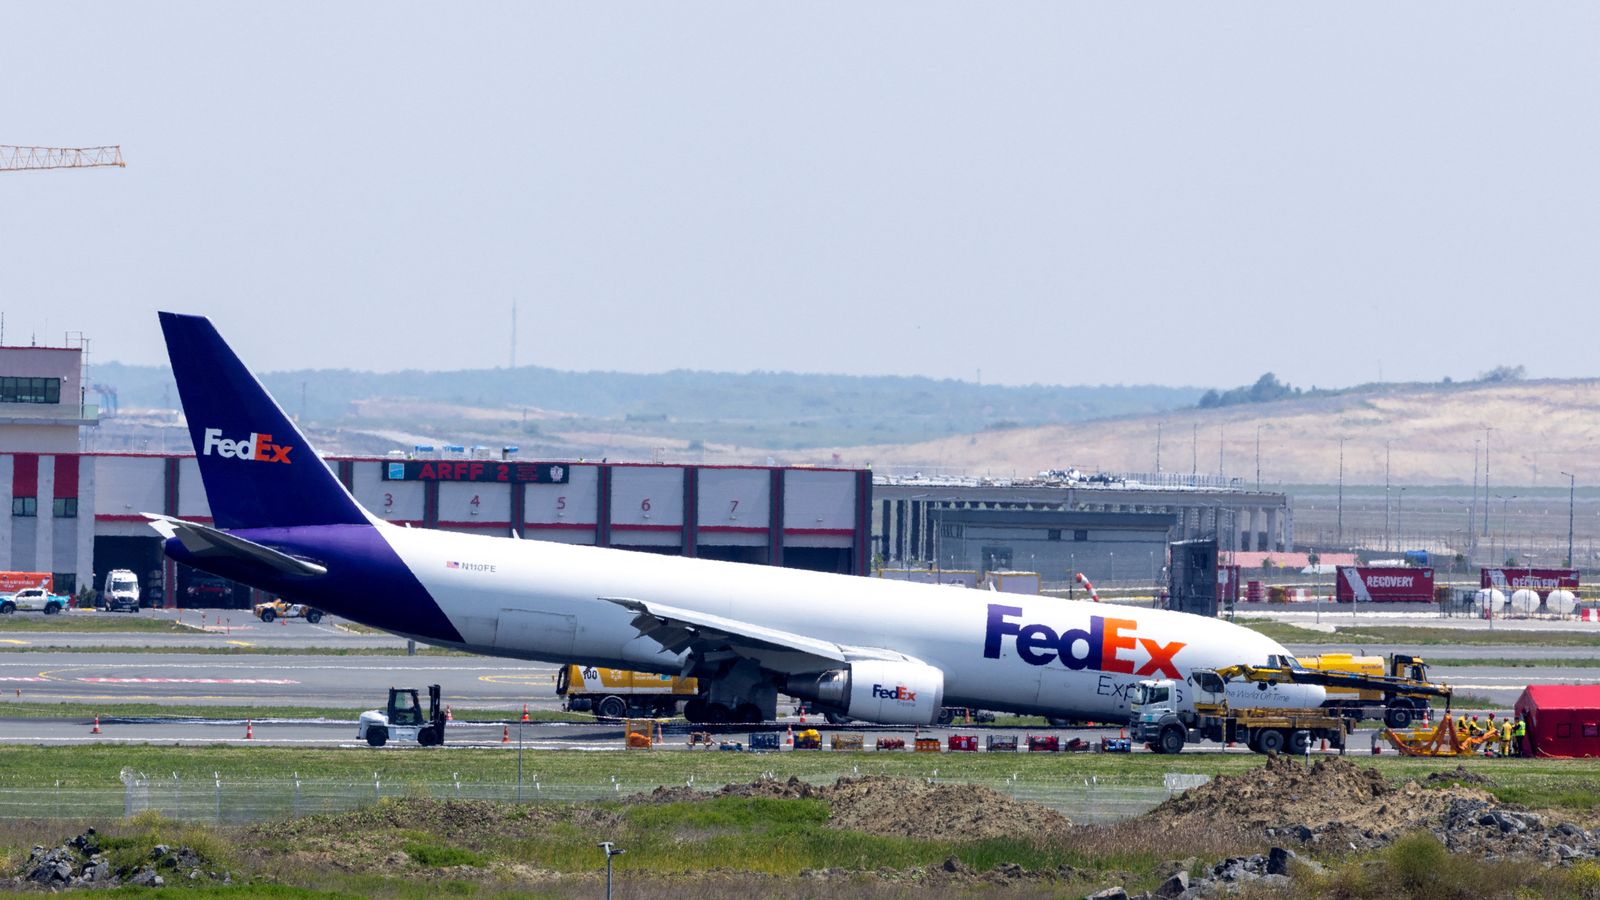 Видеото показва искри излизащи от пистата докато самолетът се влачи